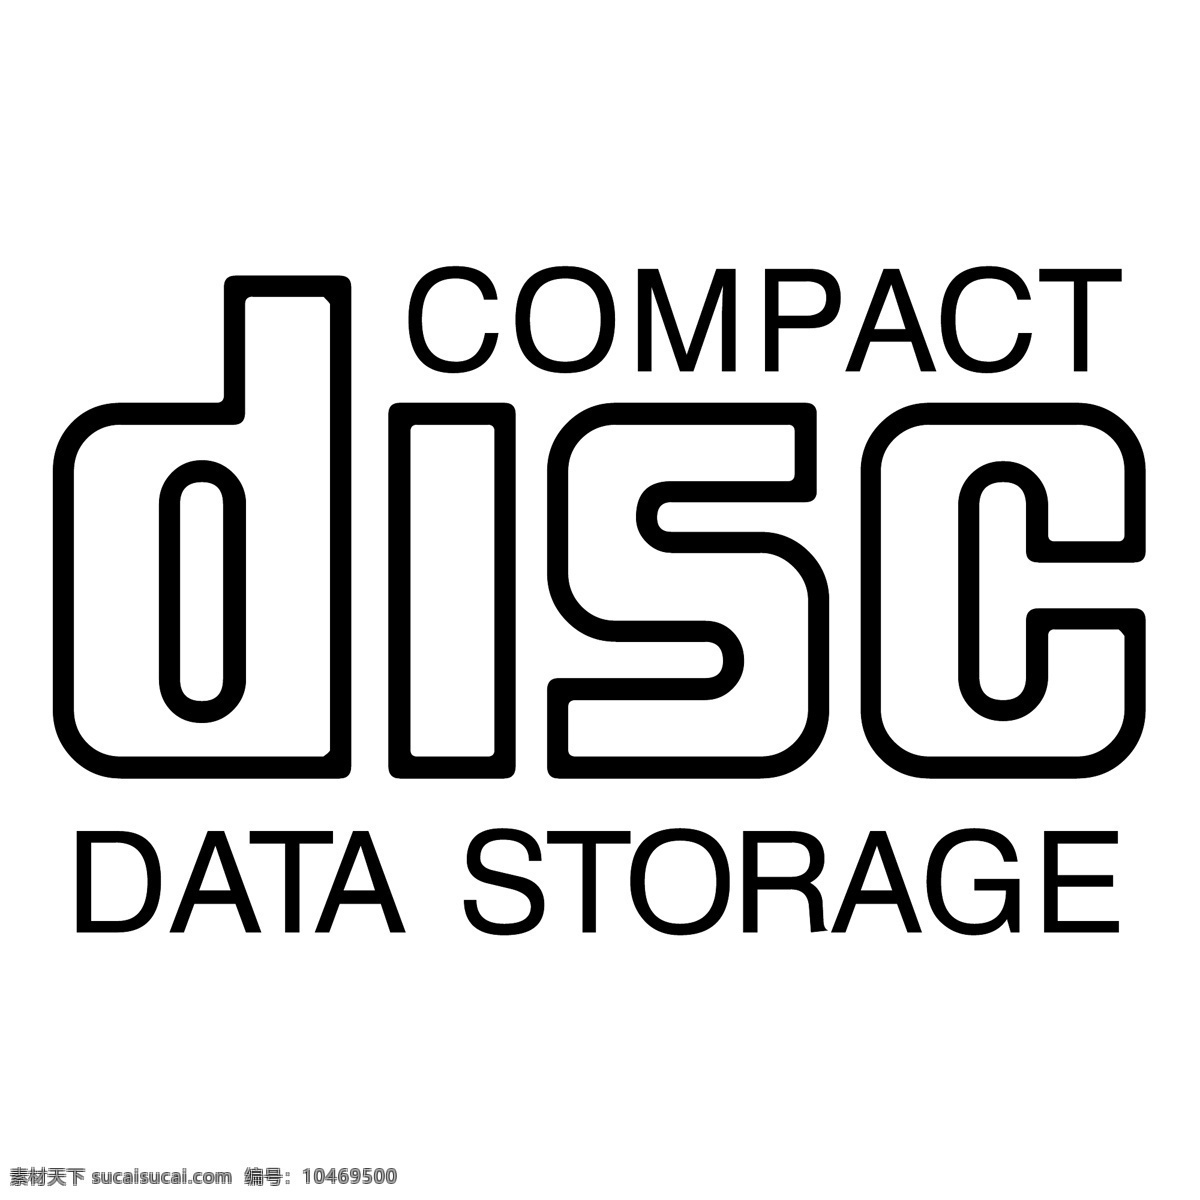 光盘 数据 存储 免费 cd 标识 标志 psd源文件 logo设计